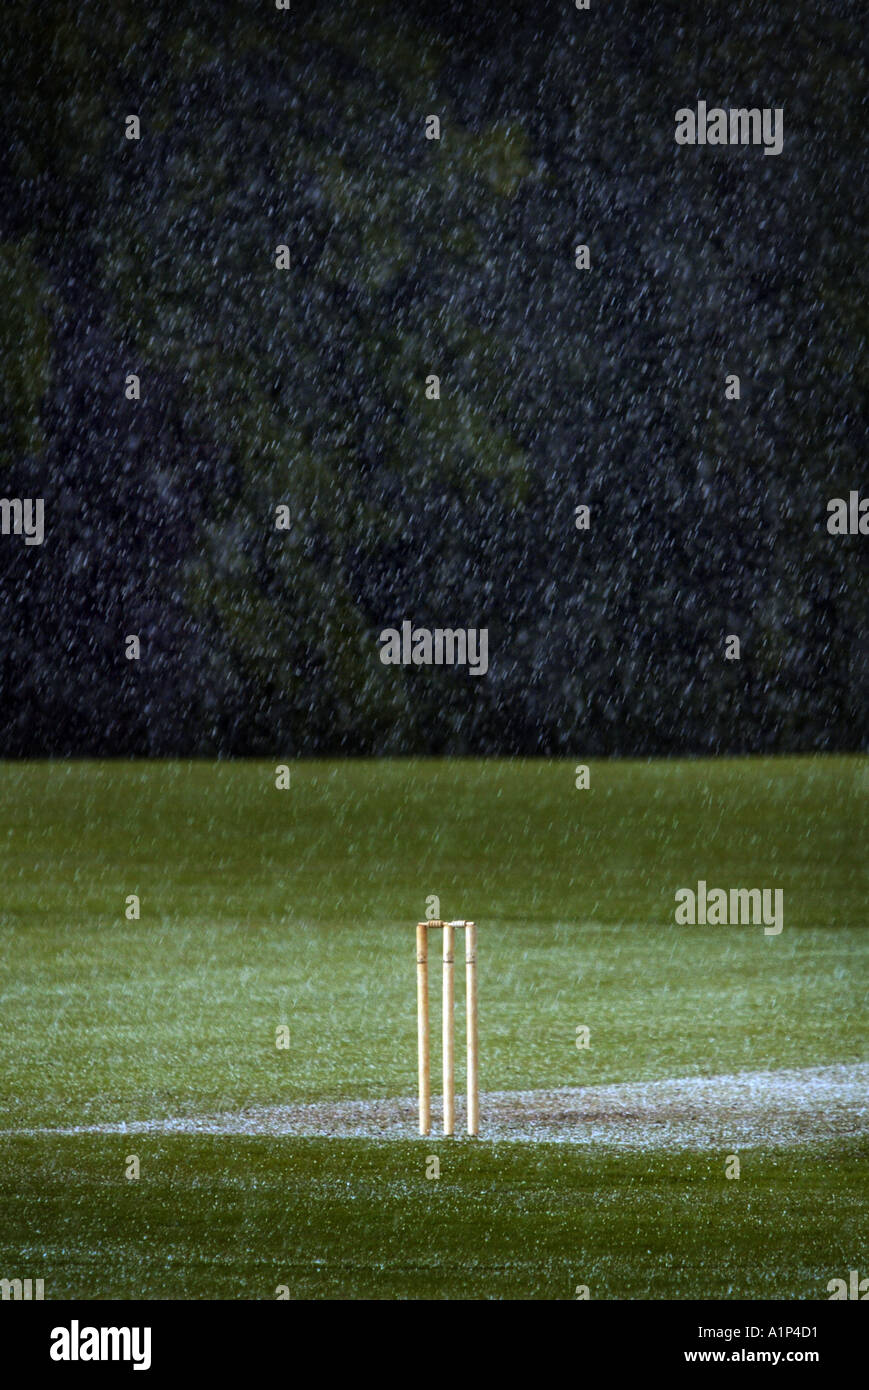 Un set di cricket di monconi nel mezzo di un acquazzone. Foto Stock